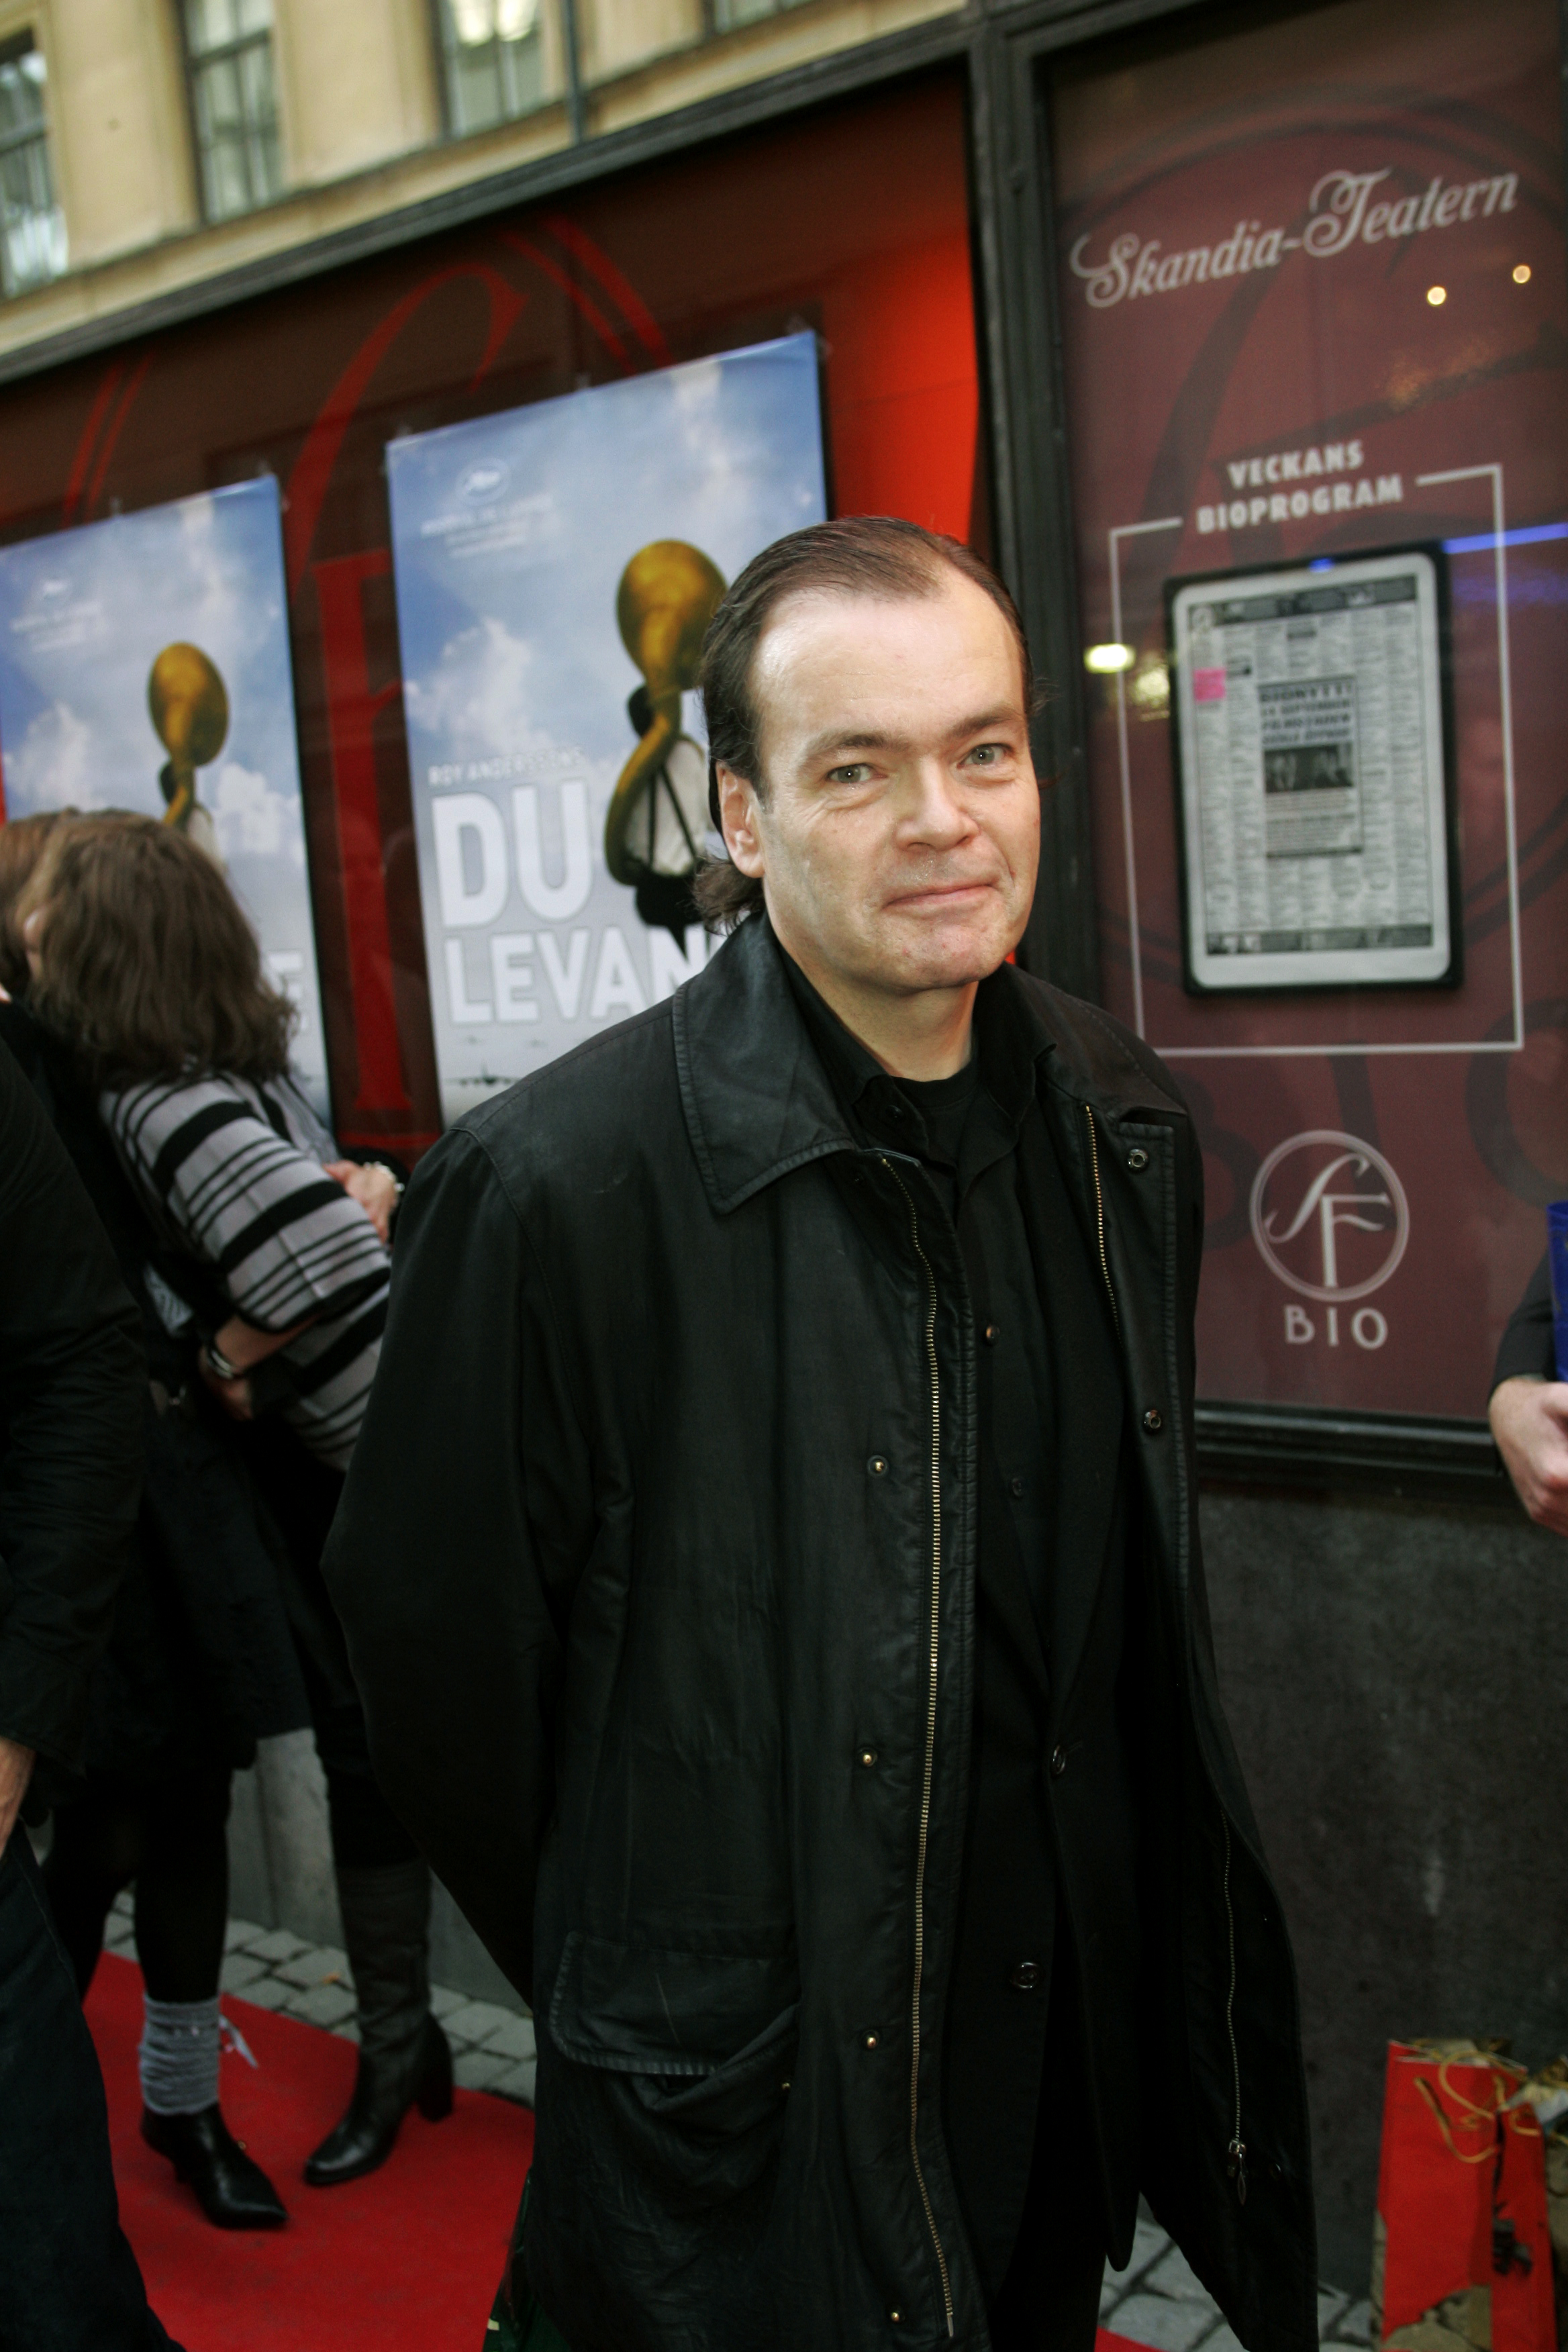 TV-komikern Johan Wahlström är bland annat känd från TV4:s långkörare "Parlamentet".